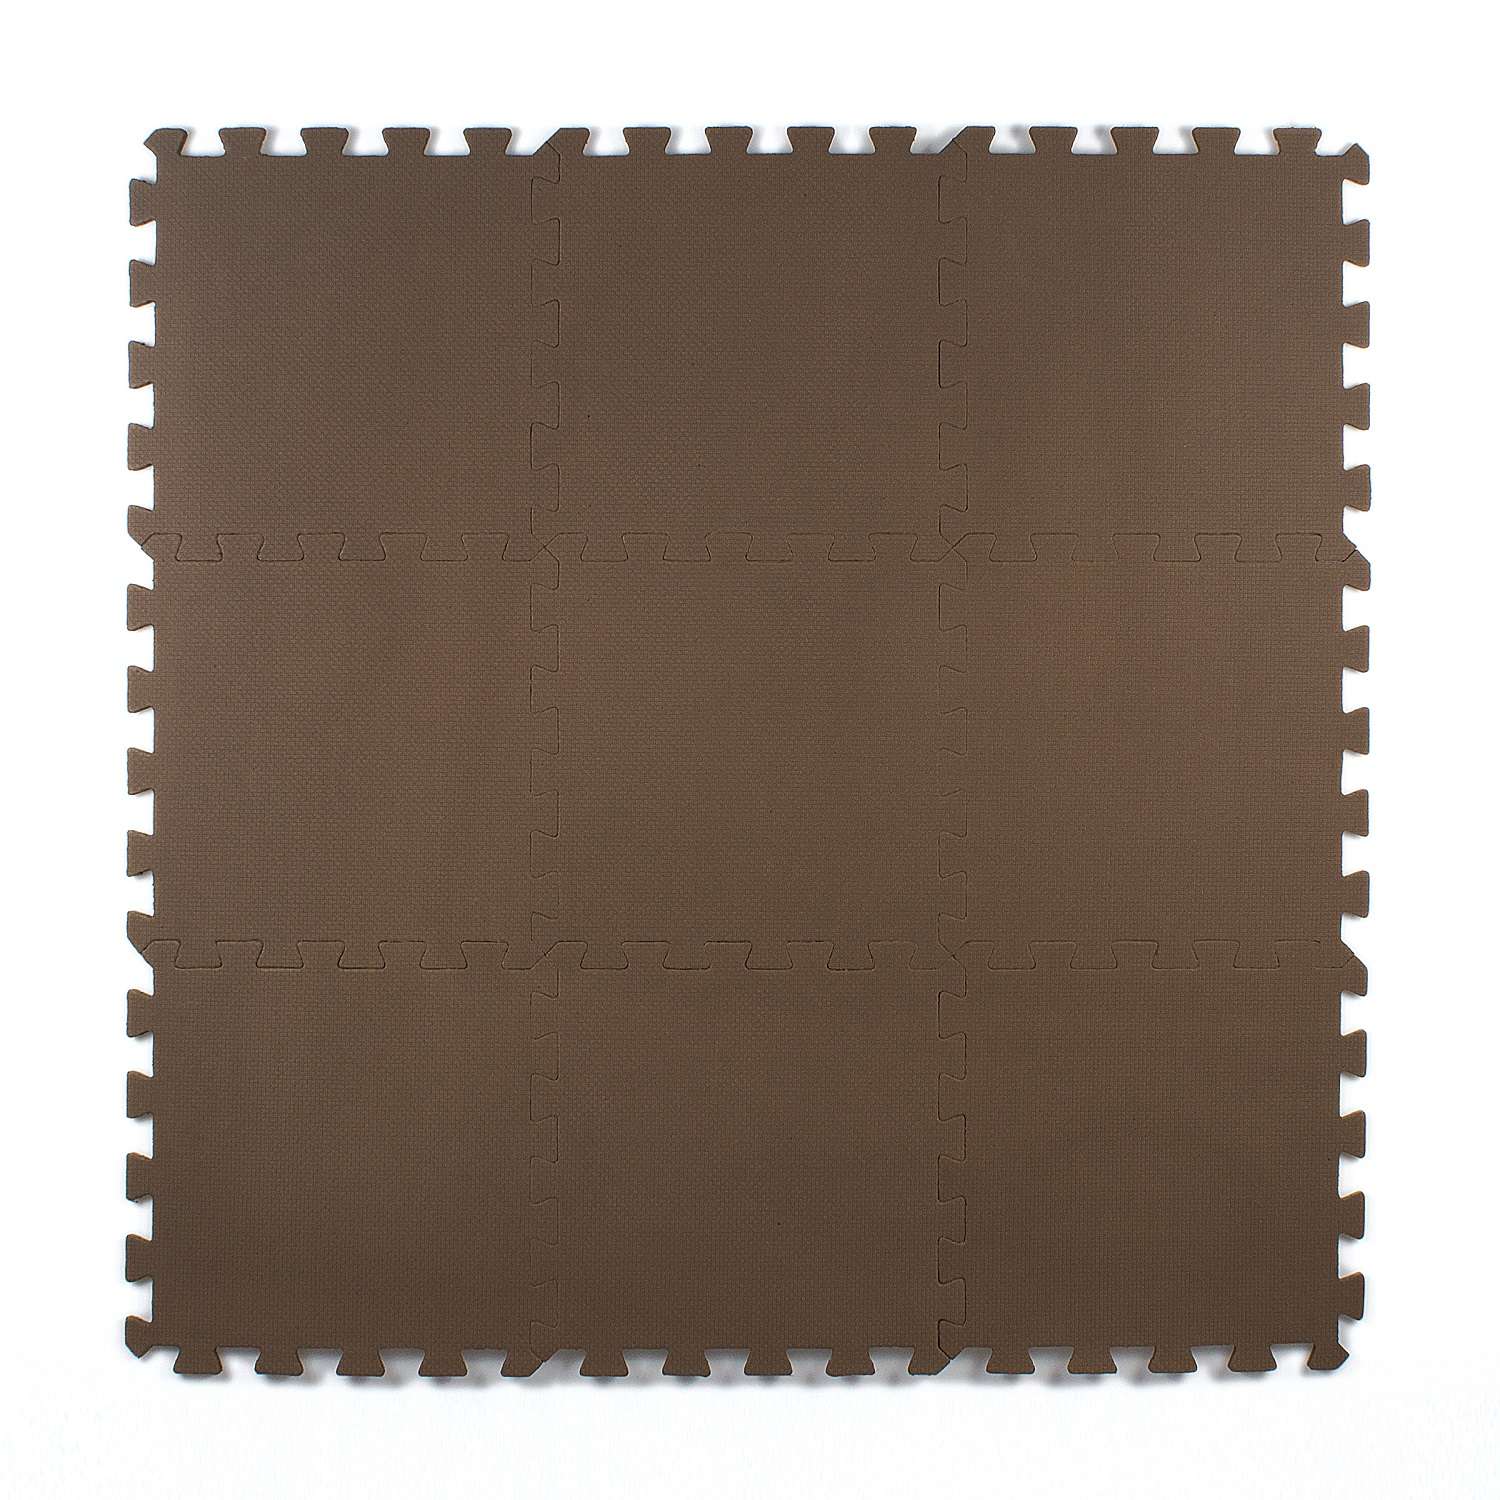 Развивающий детский коврик Eco cover игровой мягкий пол для ползания коричневый 33х33 - фото 2